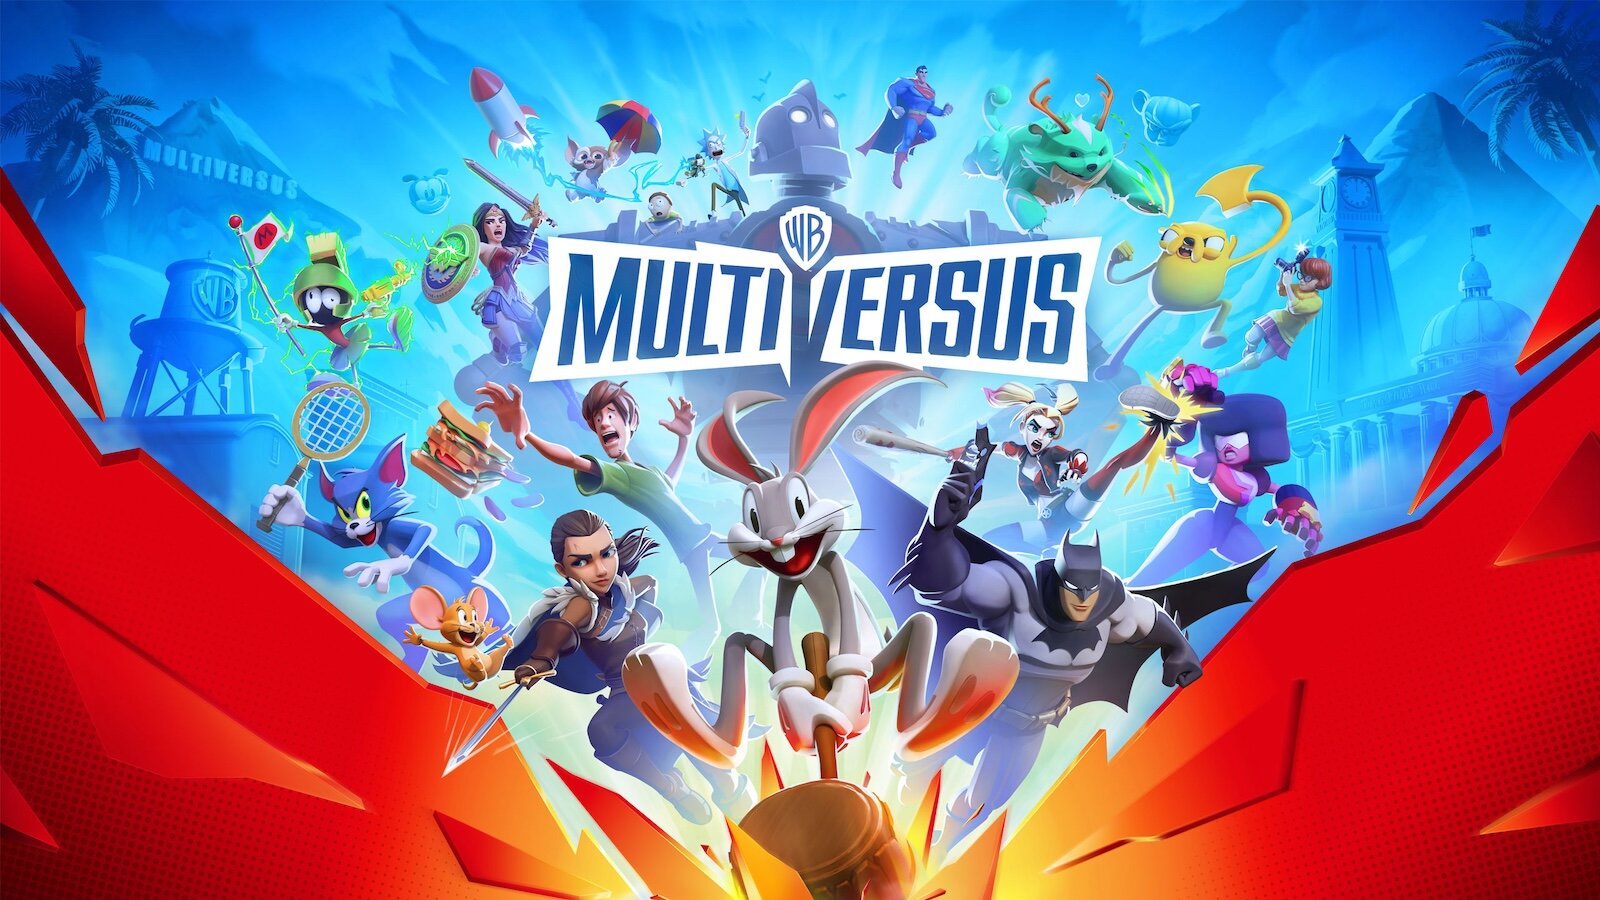 Вышел релизный трейлер бесплатного файтинга MultiVersus от Warner Bros: выйдет на ПК и консолях 28 мая